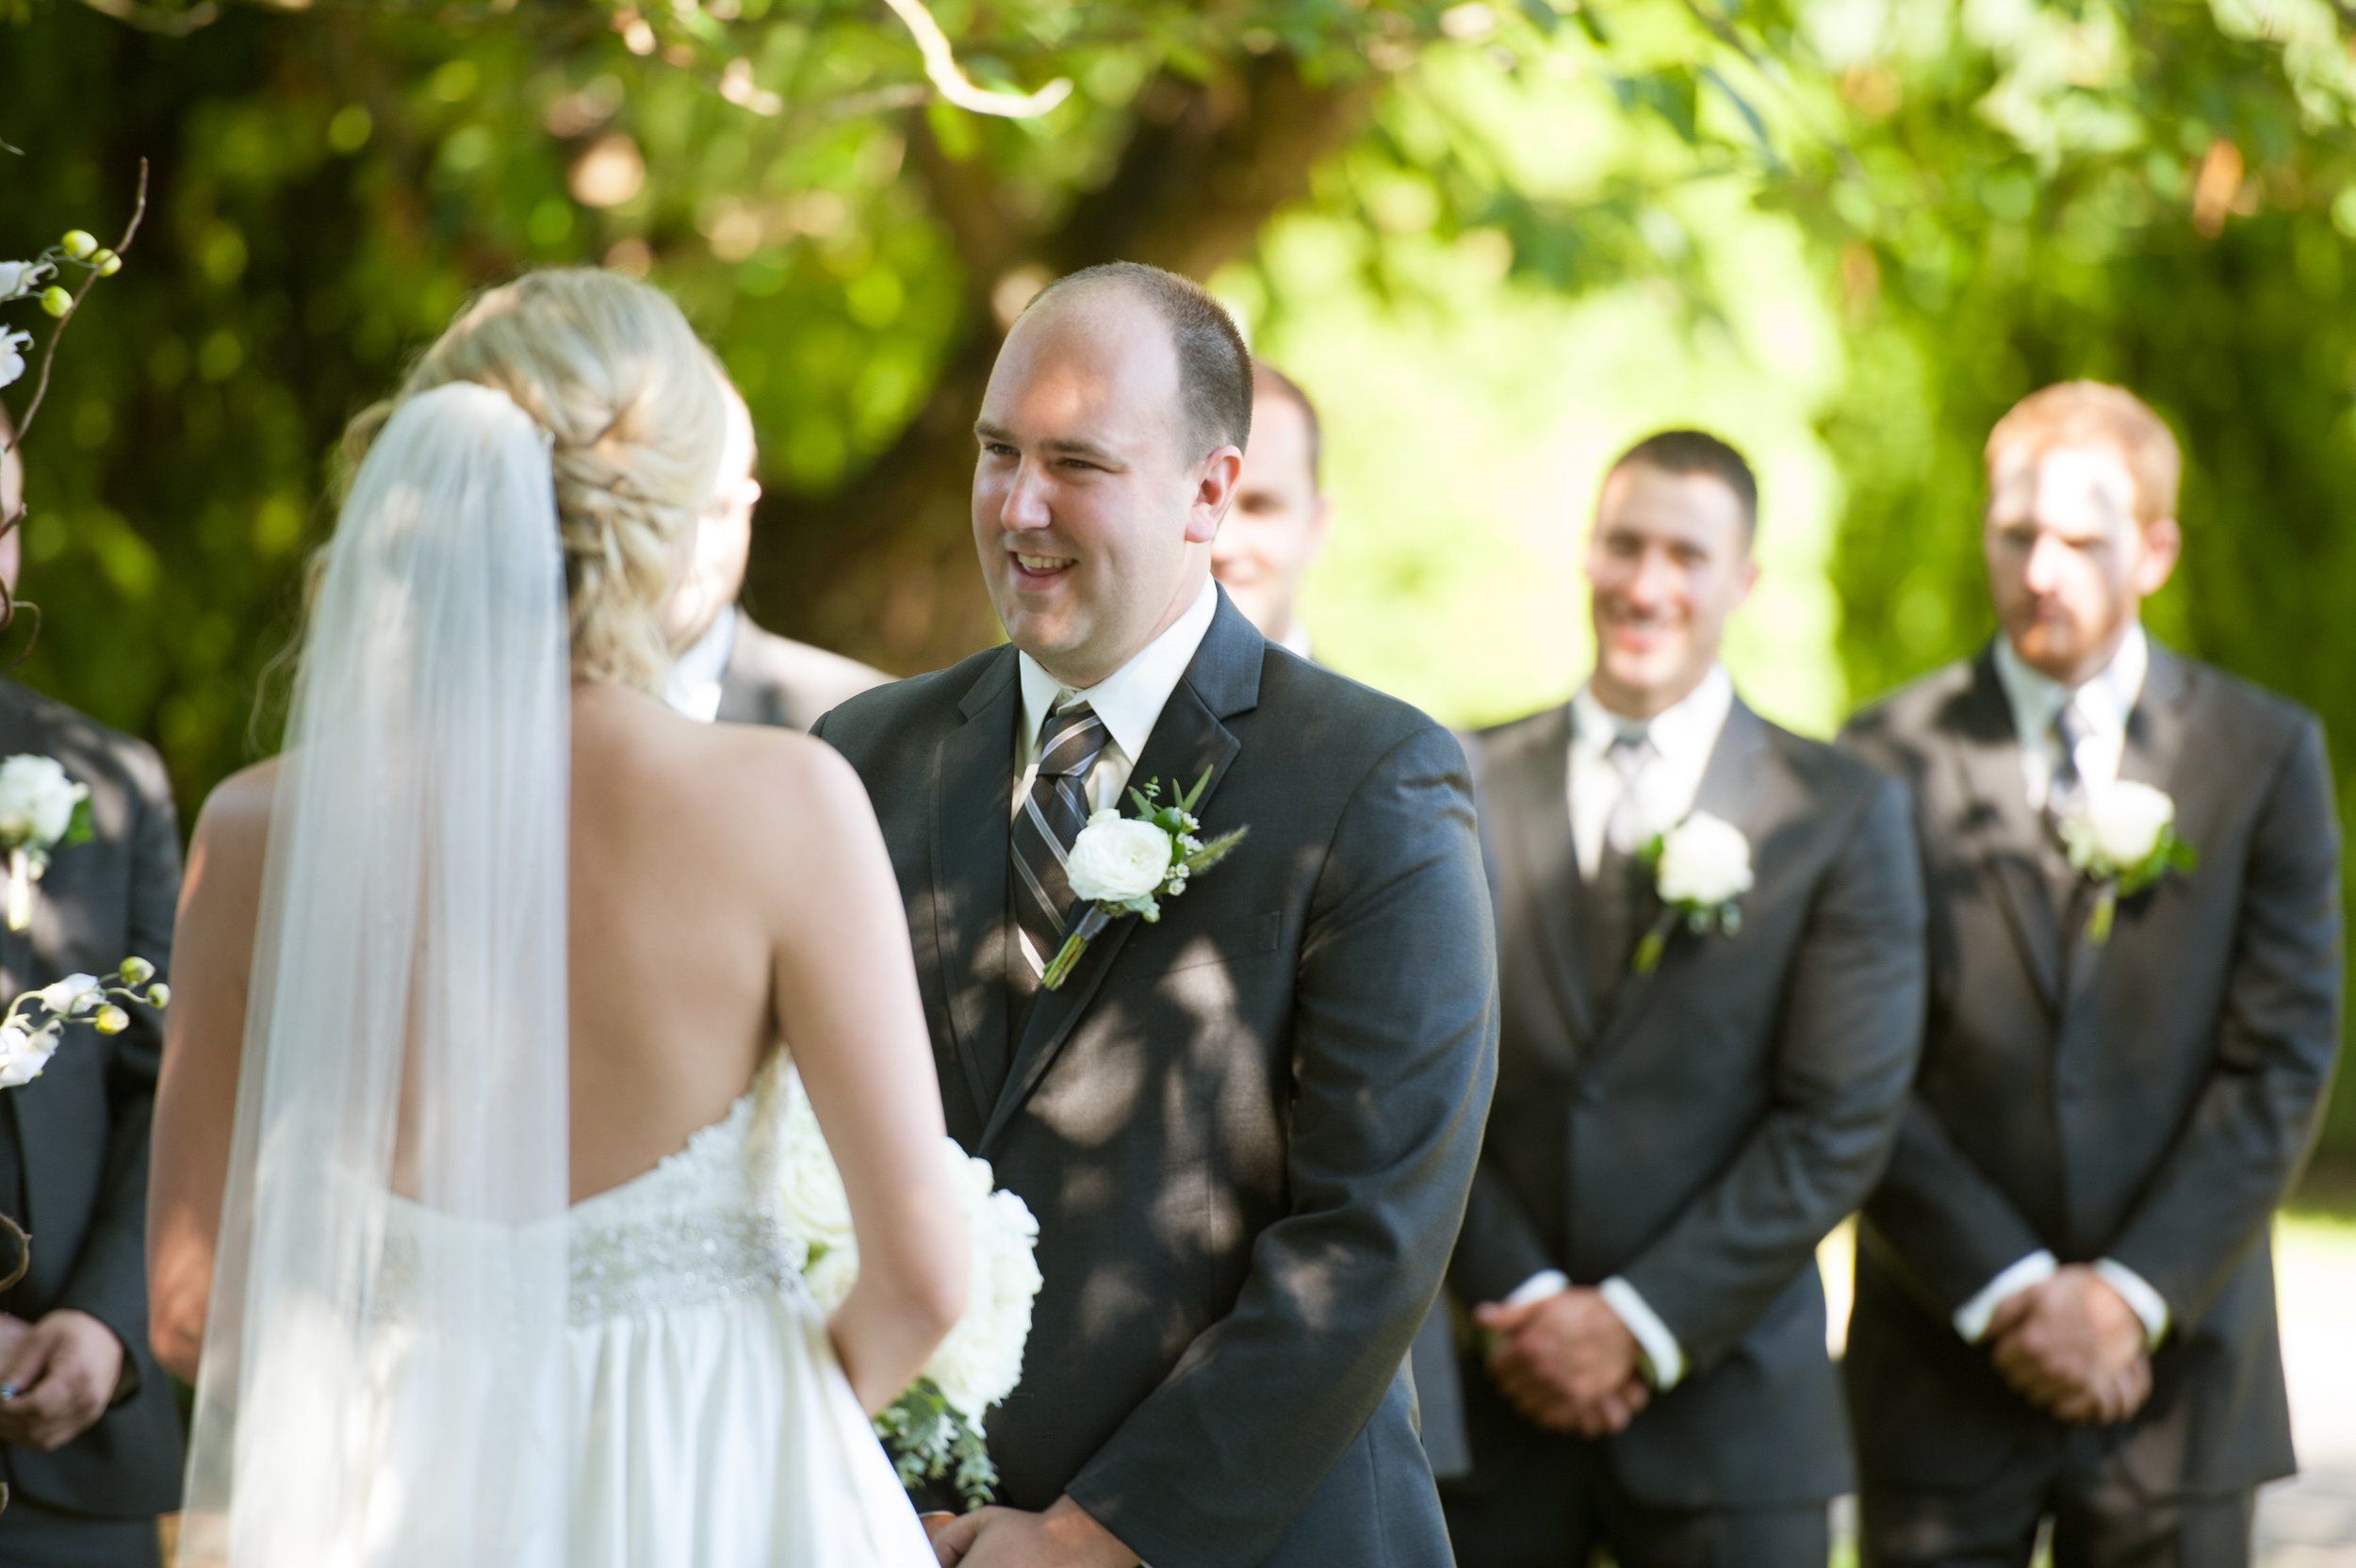 RyanMichelle-wedding-MarkBurnham-256.jpg